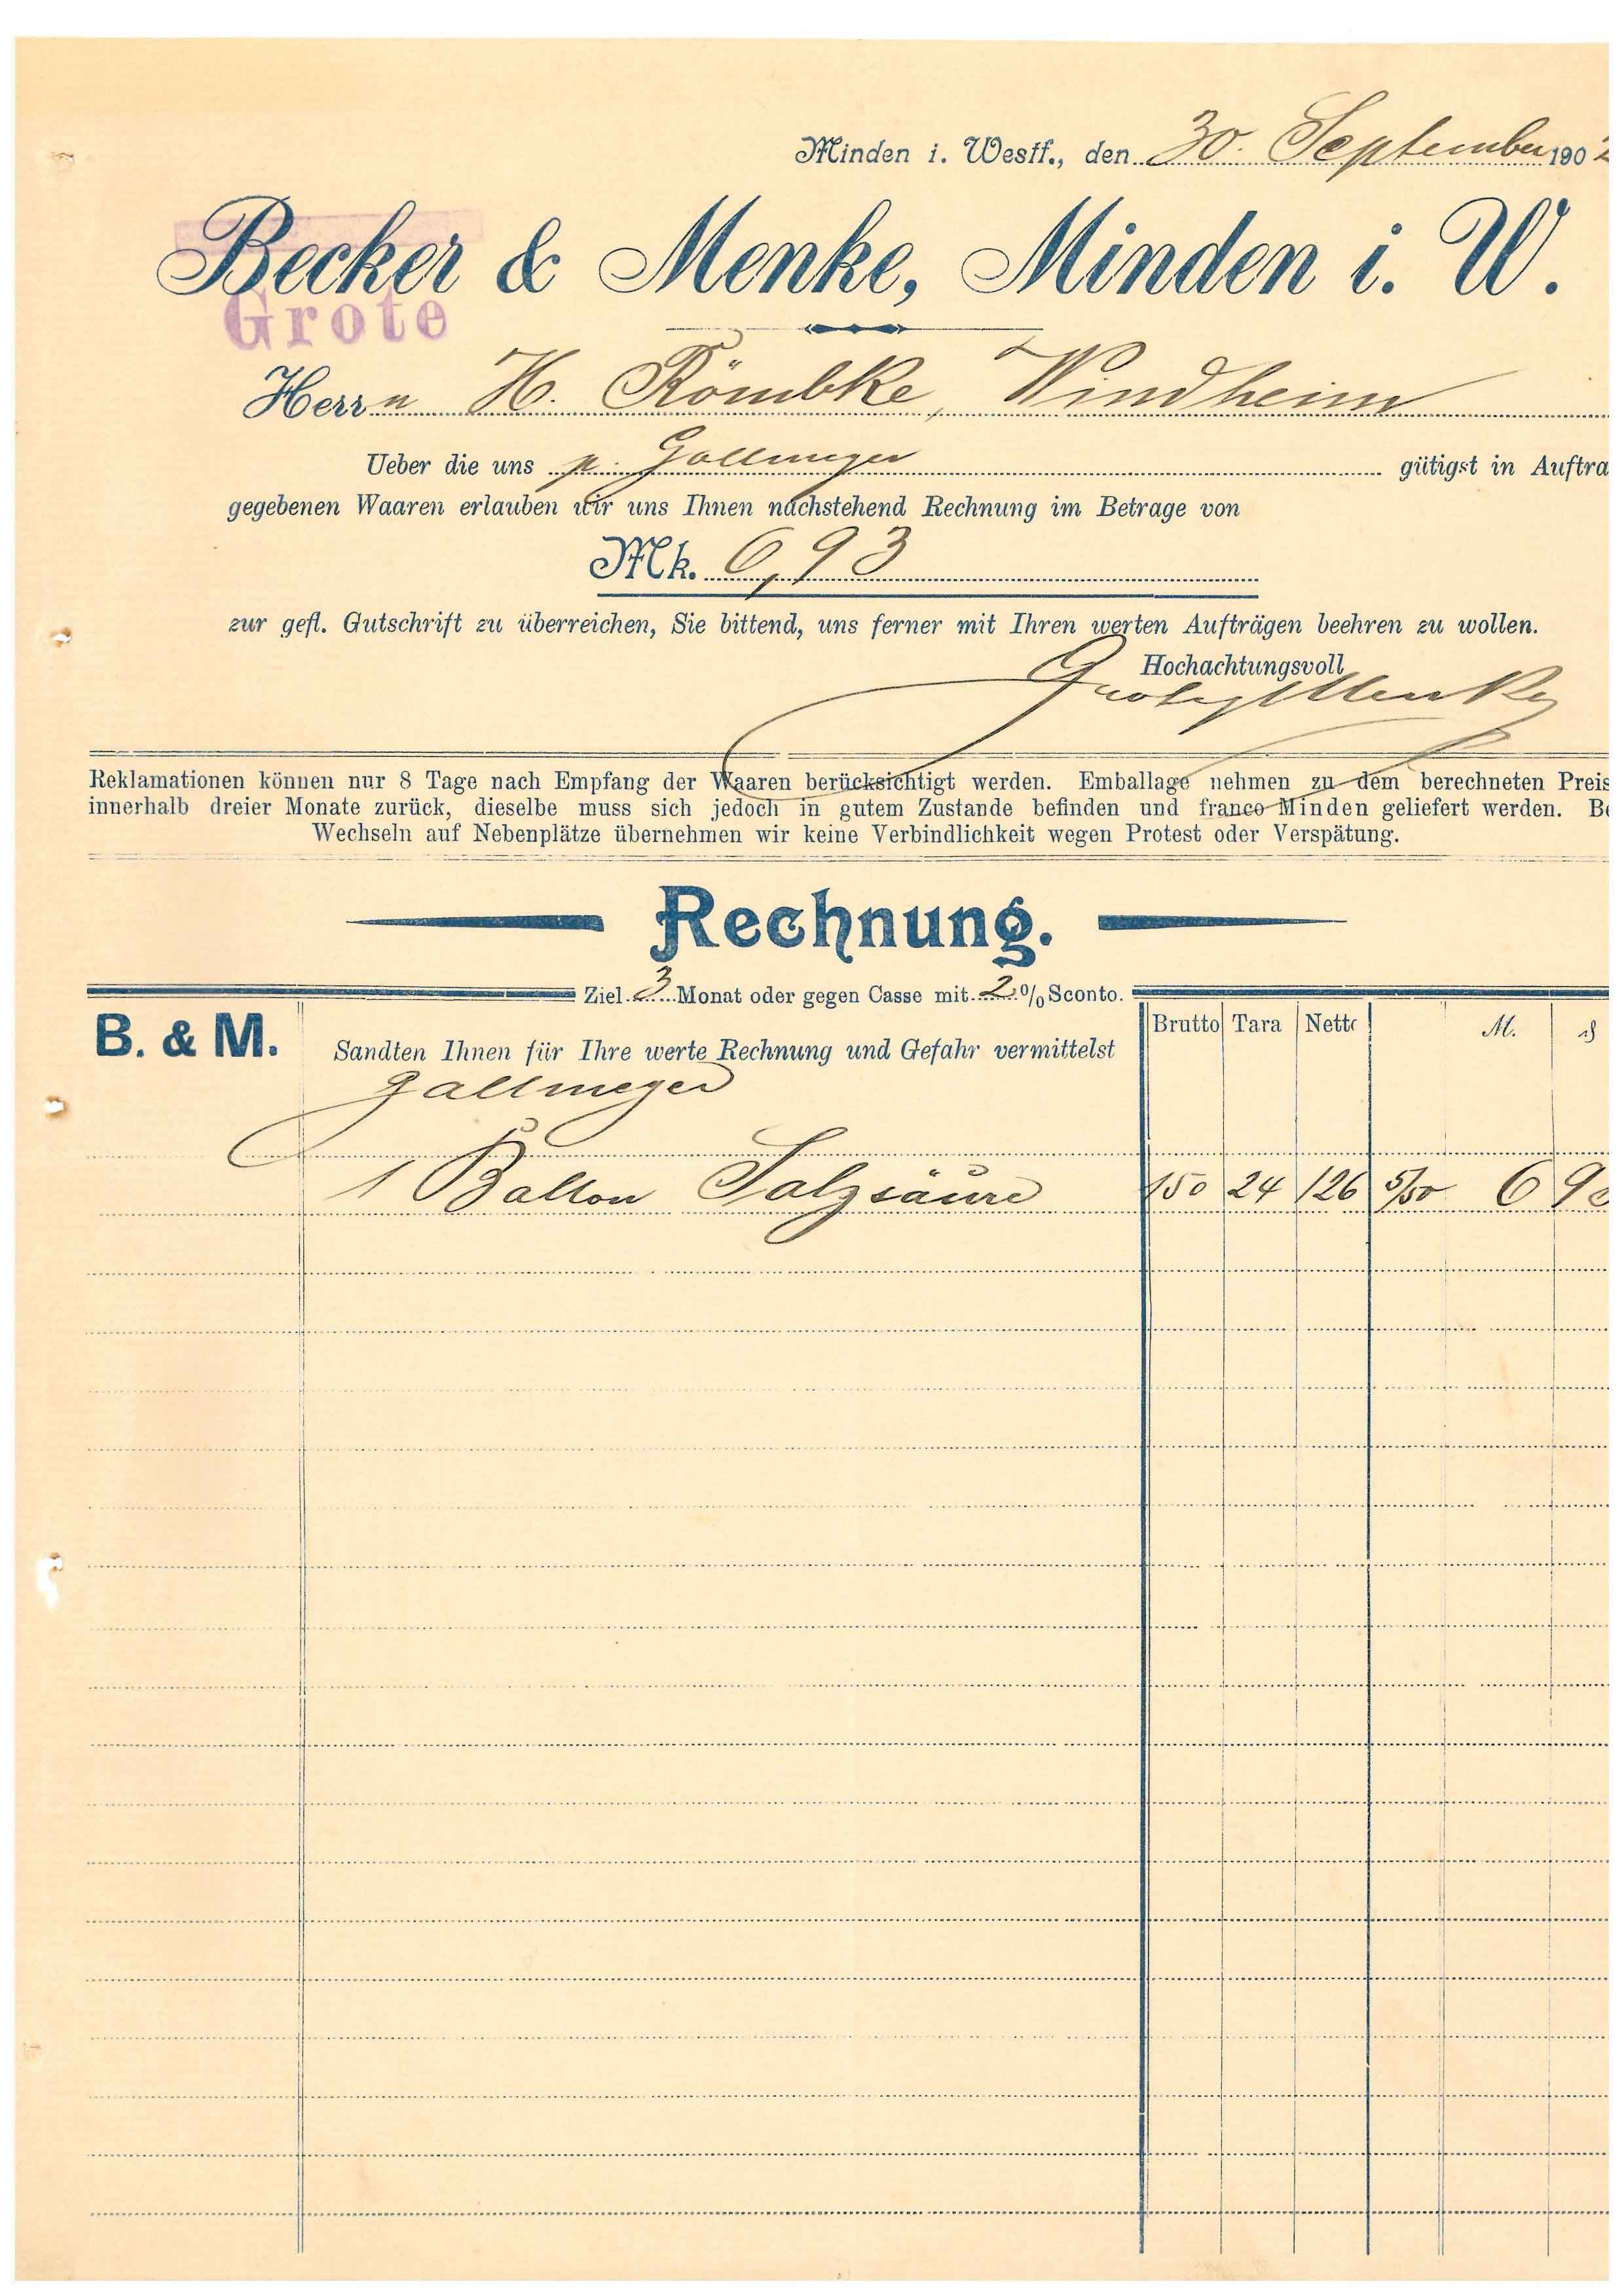 Rechnung Becker & Menke, 1902, Minden i. W. (Mindener Museum RR-R)